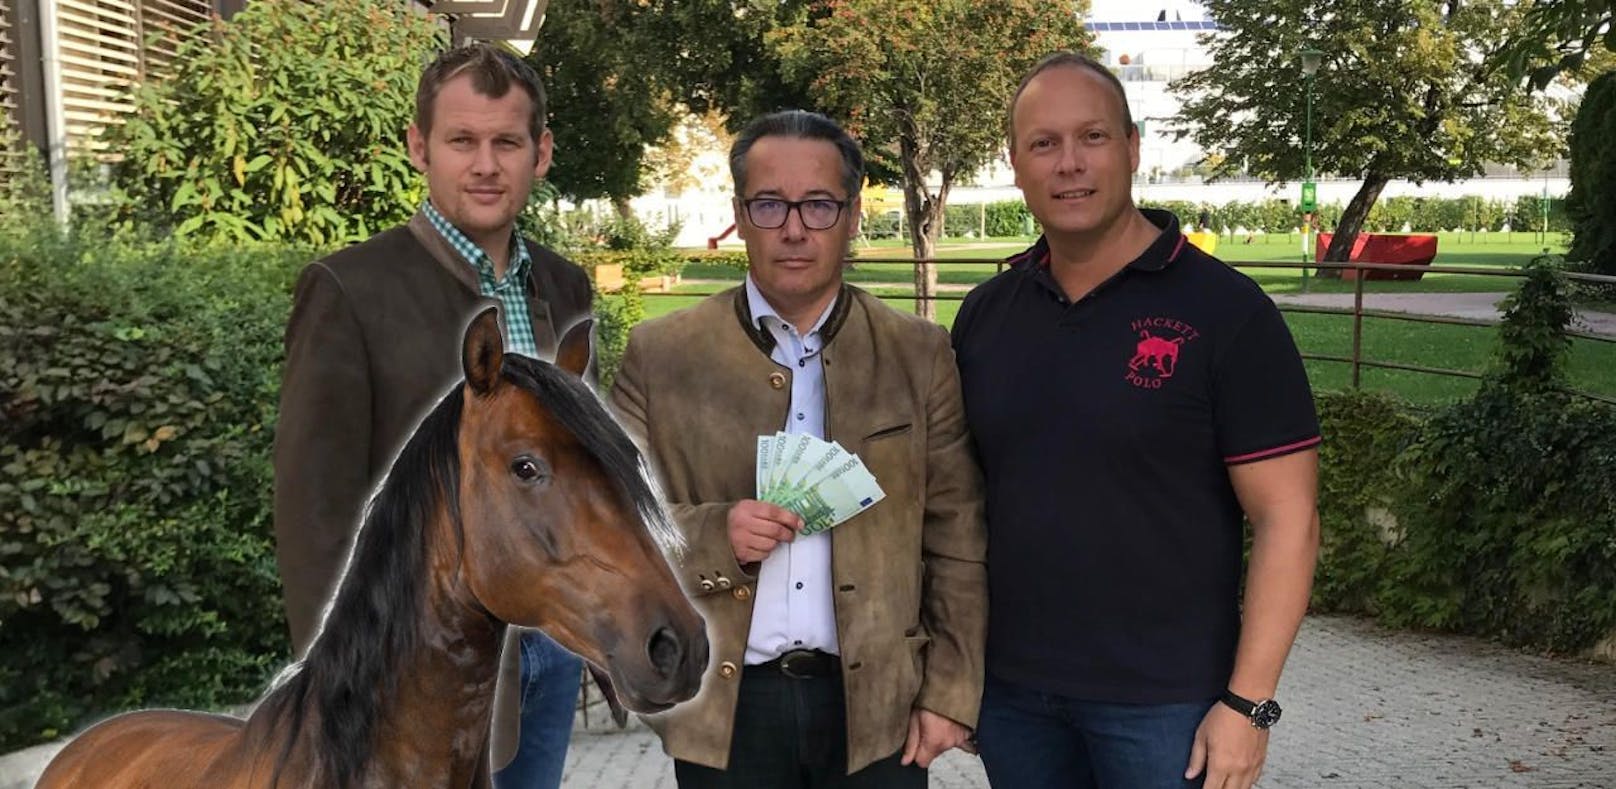 Schnur-Angriff auf Reiter: 500 Euro für Hinweise